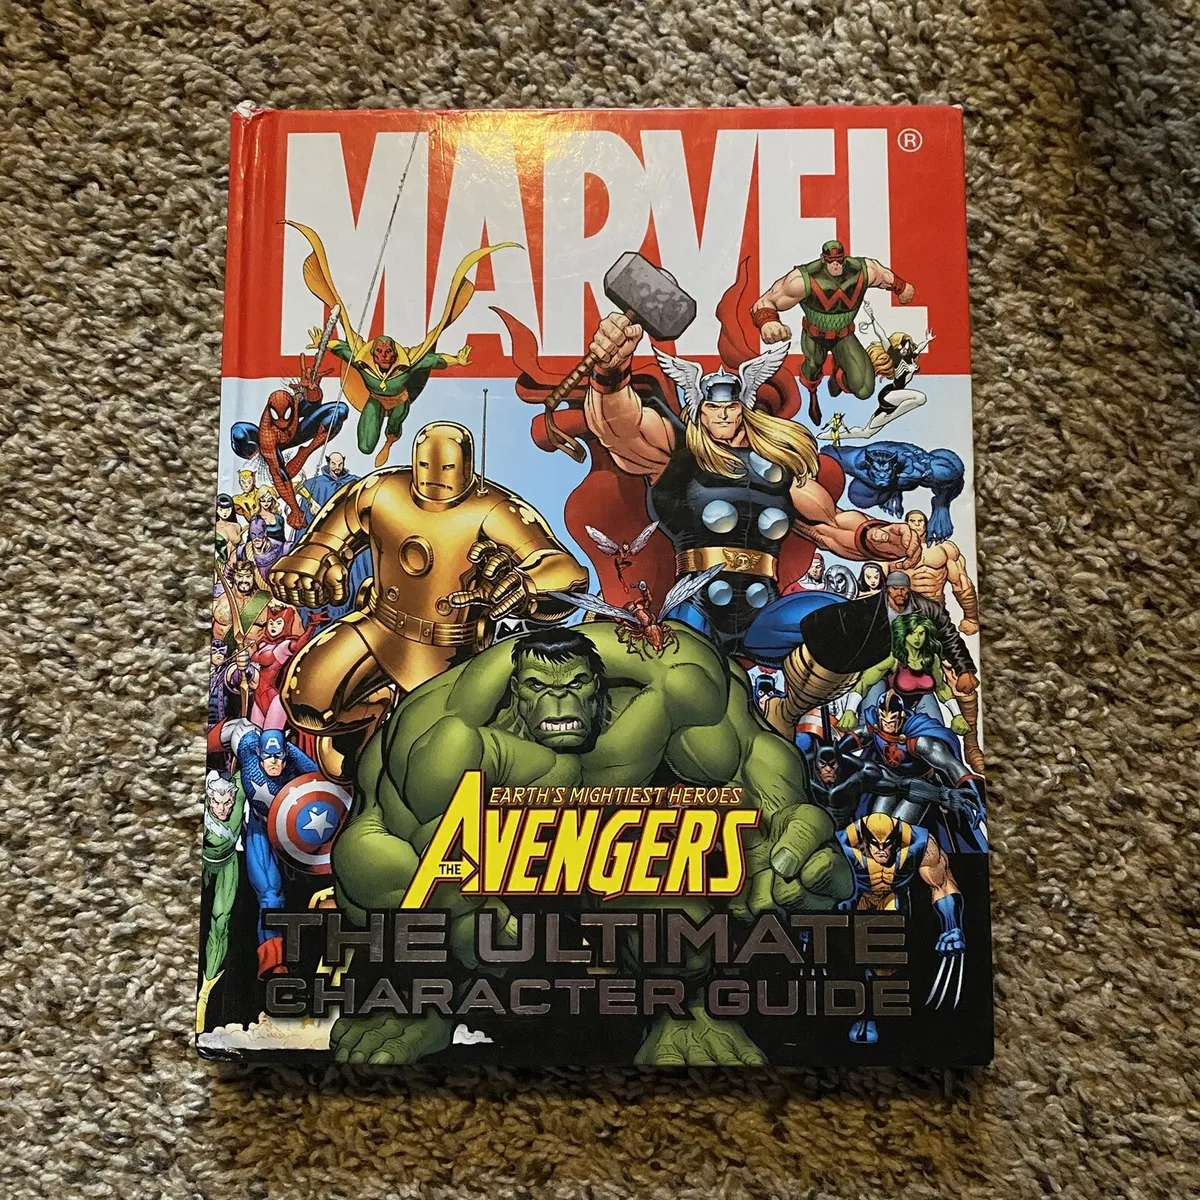 Marvel Avengers Ultimate Character Guide eBay